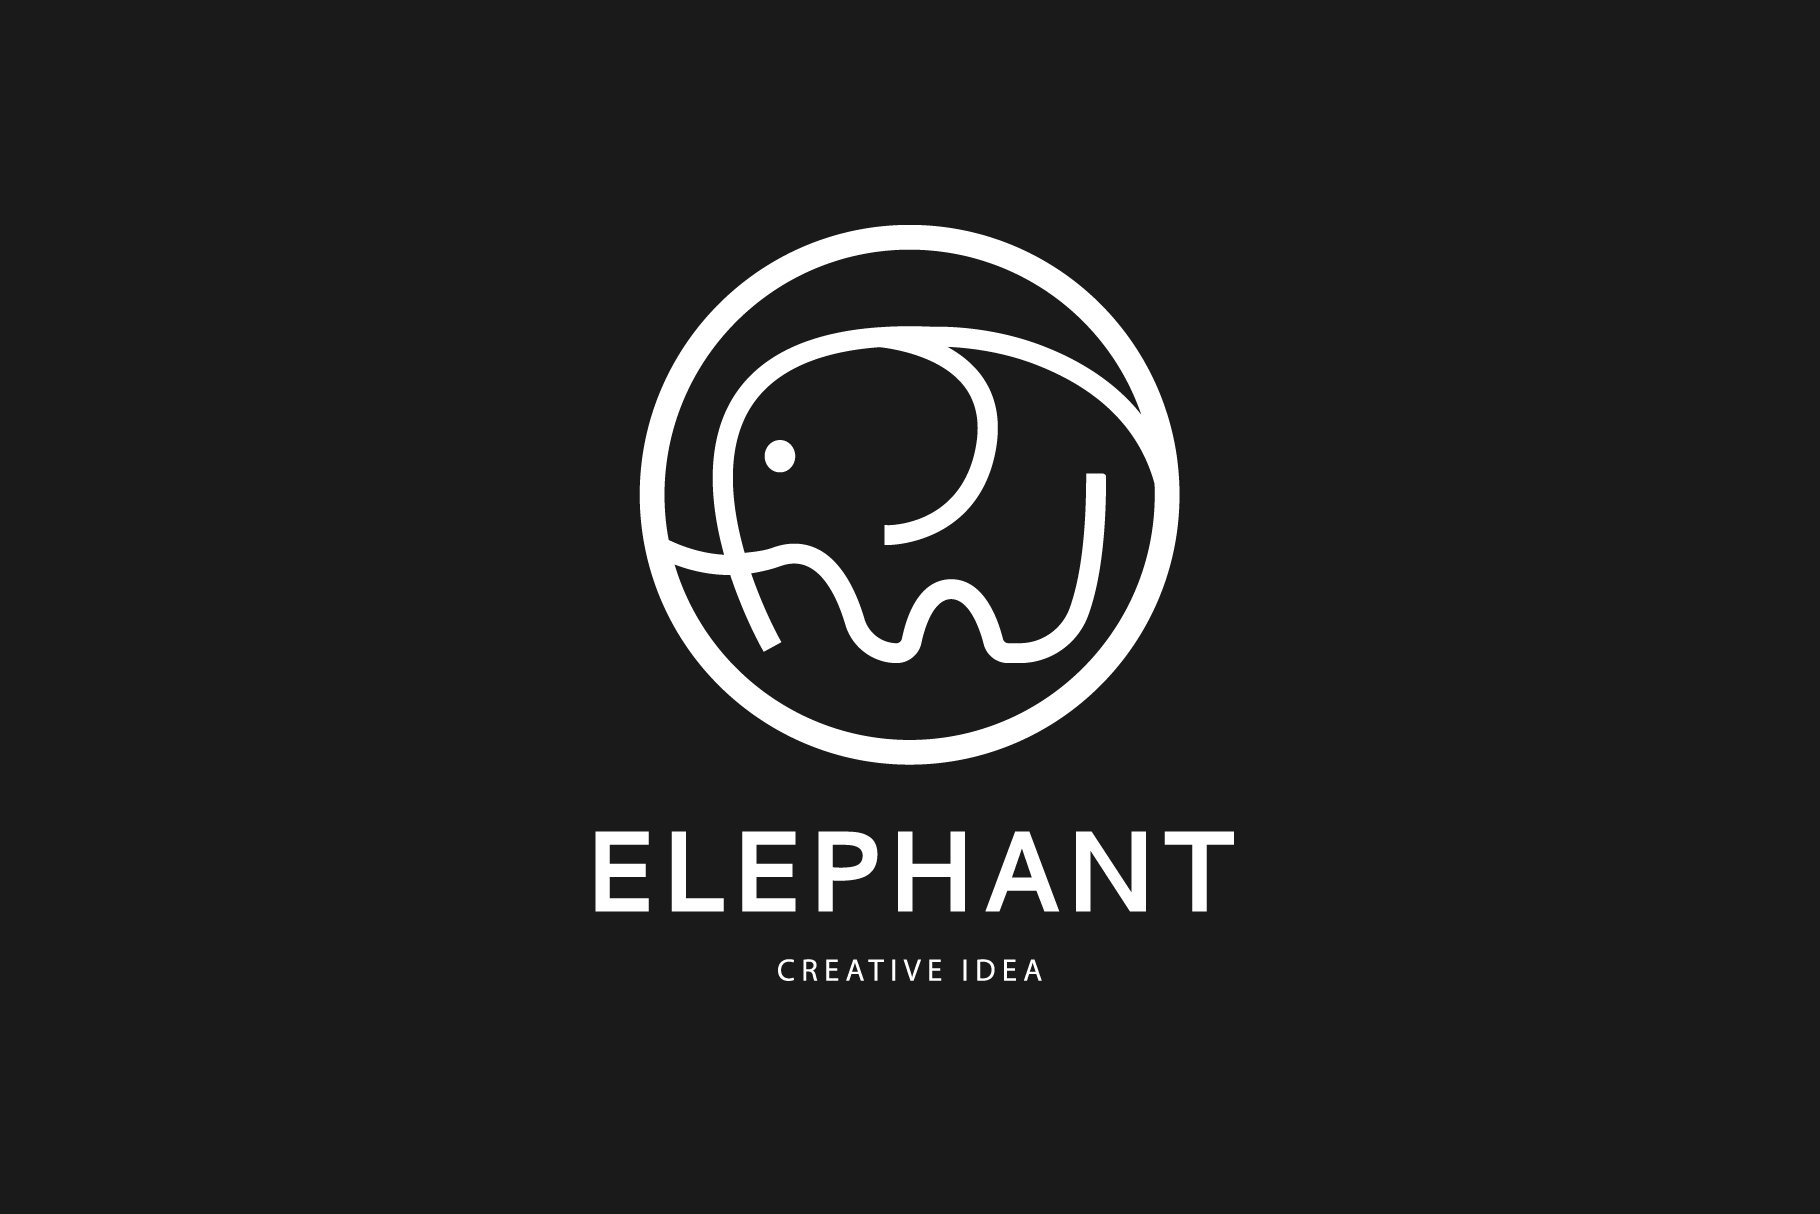 Elephant logo design. preview image.